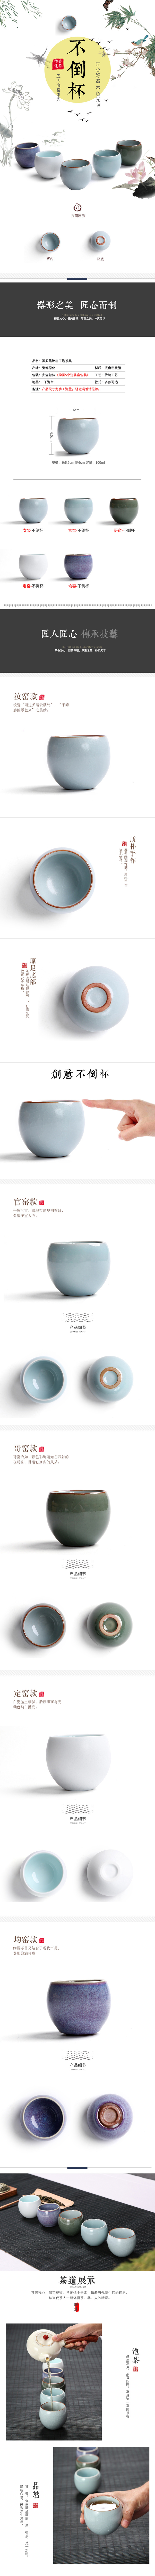 淘宝美工槭子中国风瓷器茶杯详情页模板作品